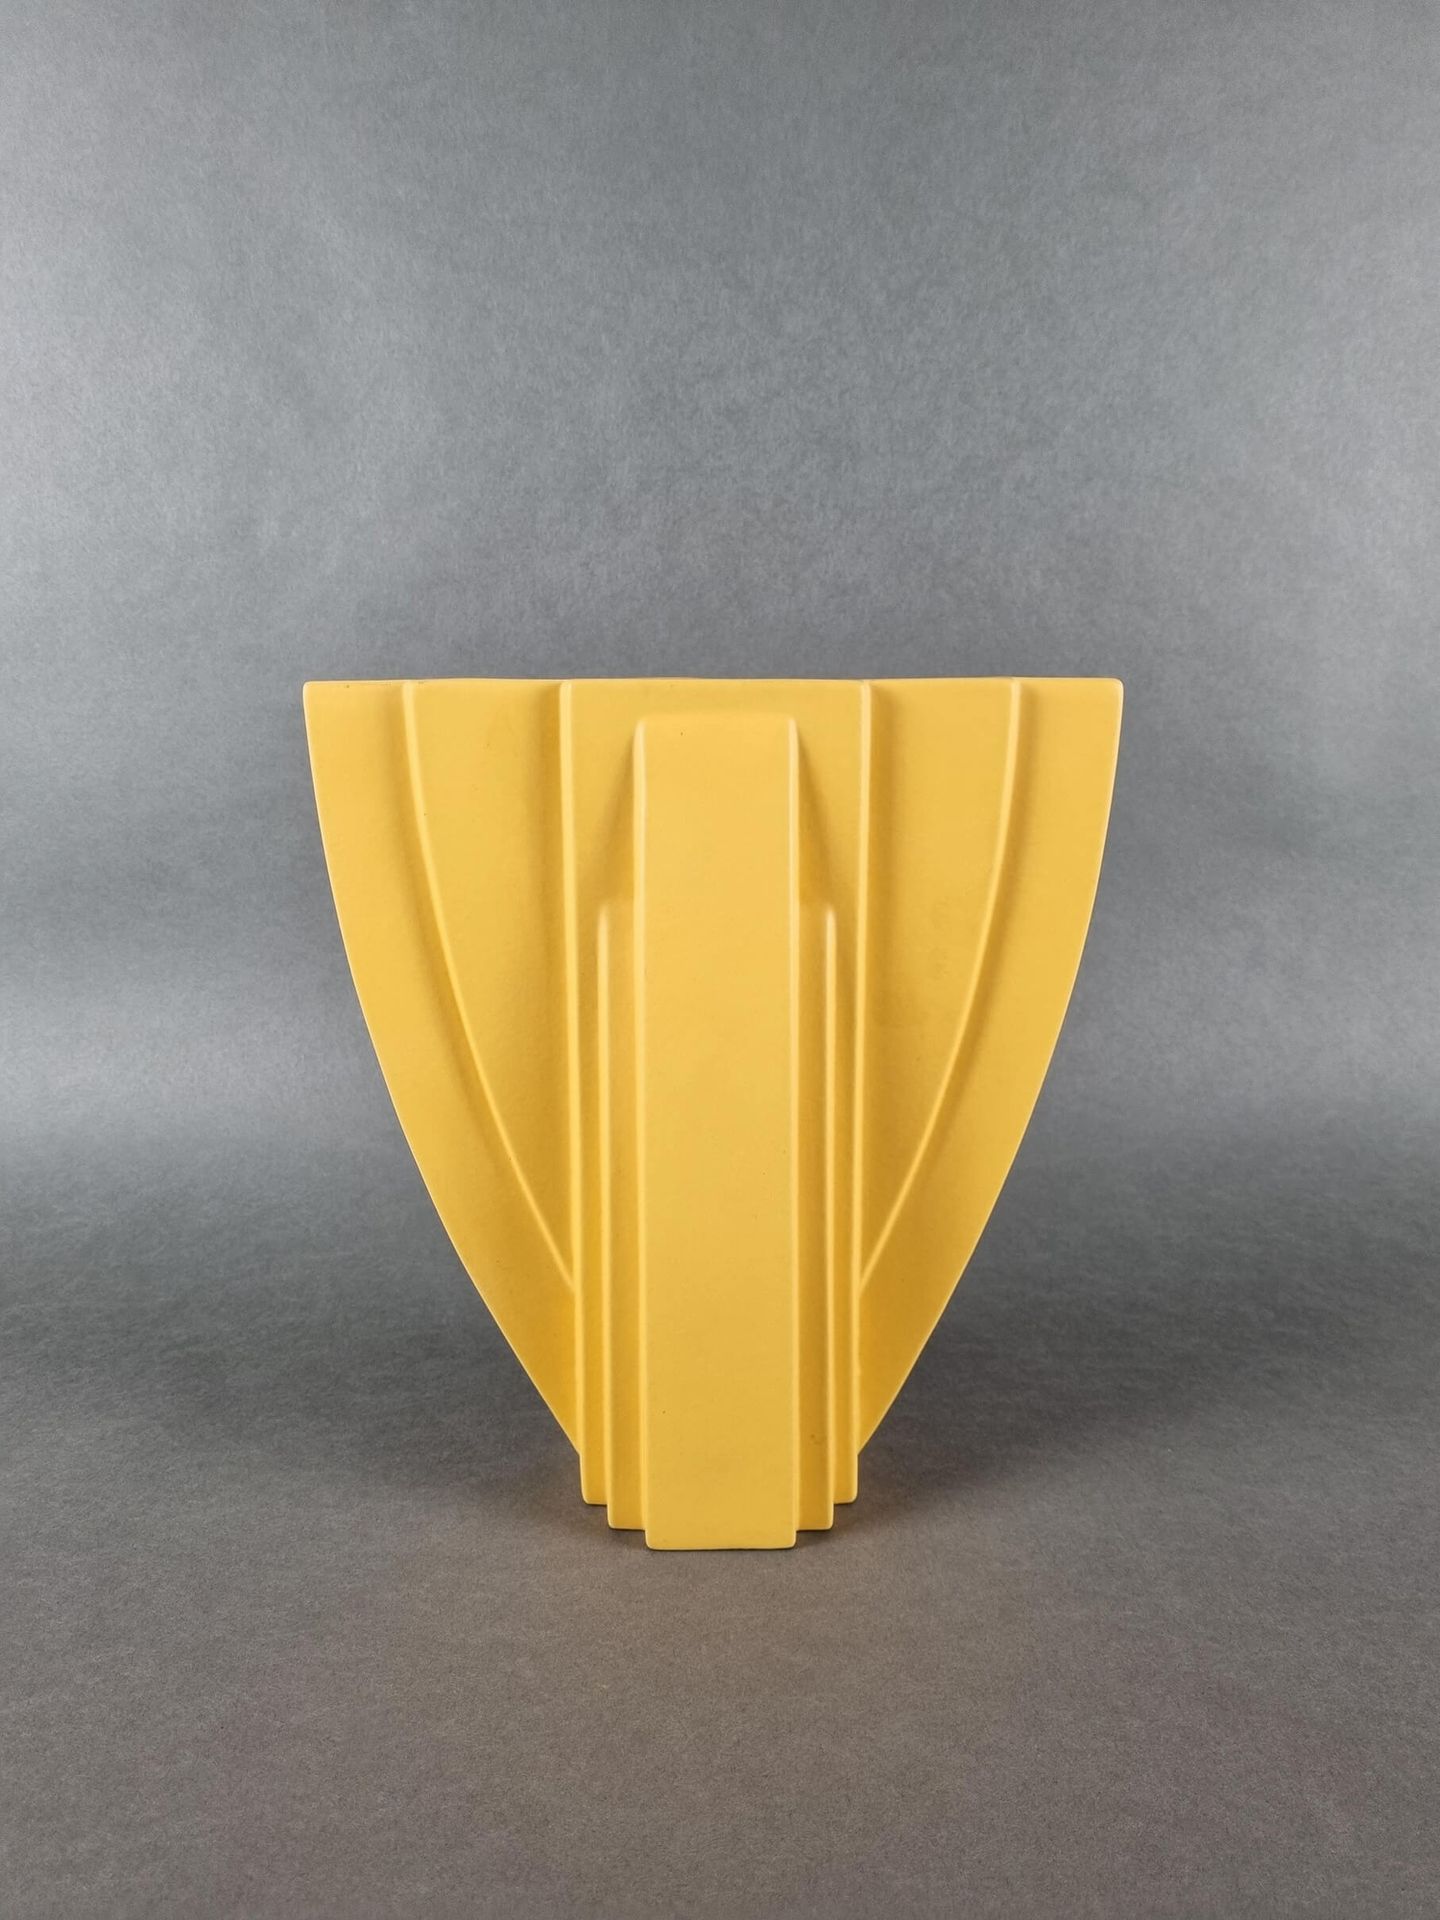 DUMAS Claude (1955) Vase aus Keramik, signiert Claude Dumas. H: 29 cm